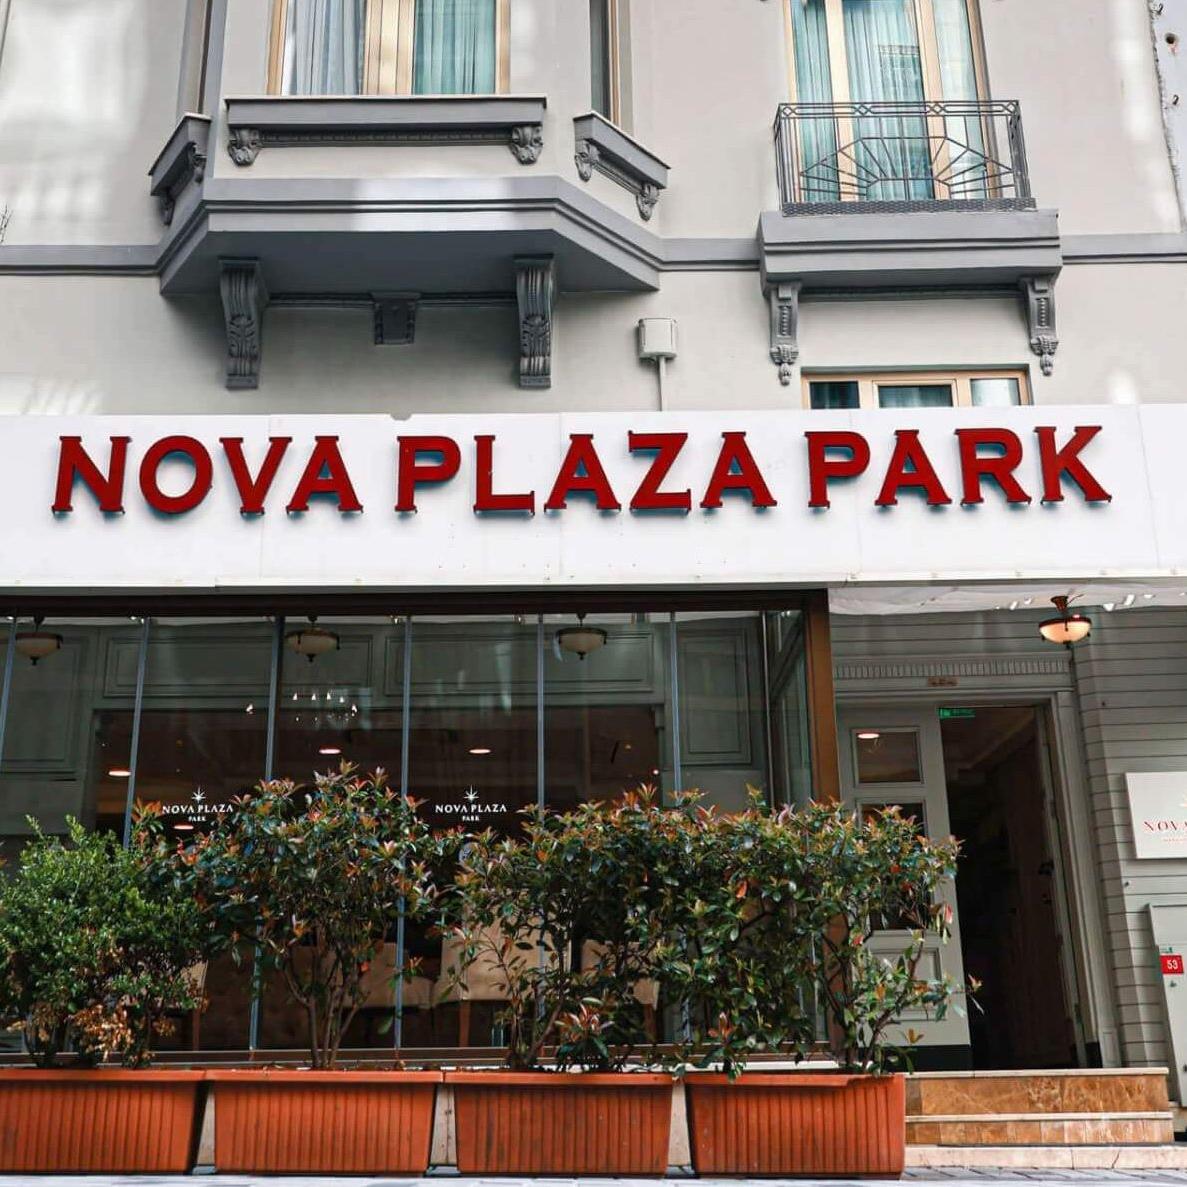 Nova Plaza Park Hotel royal plaza hotel